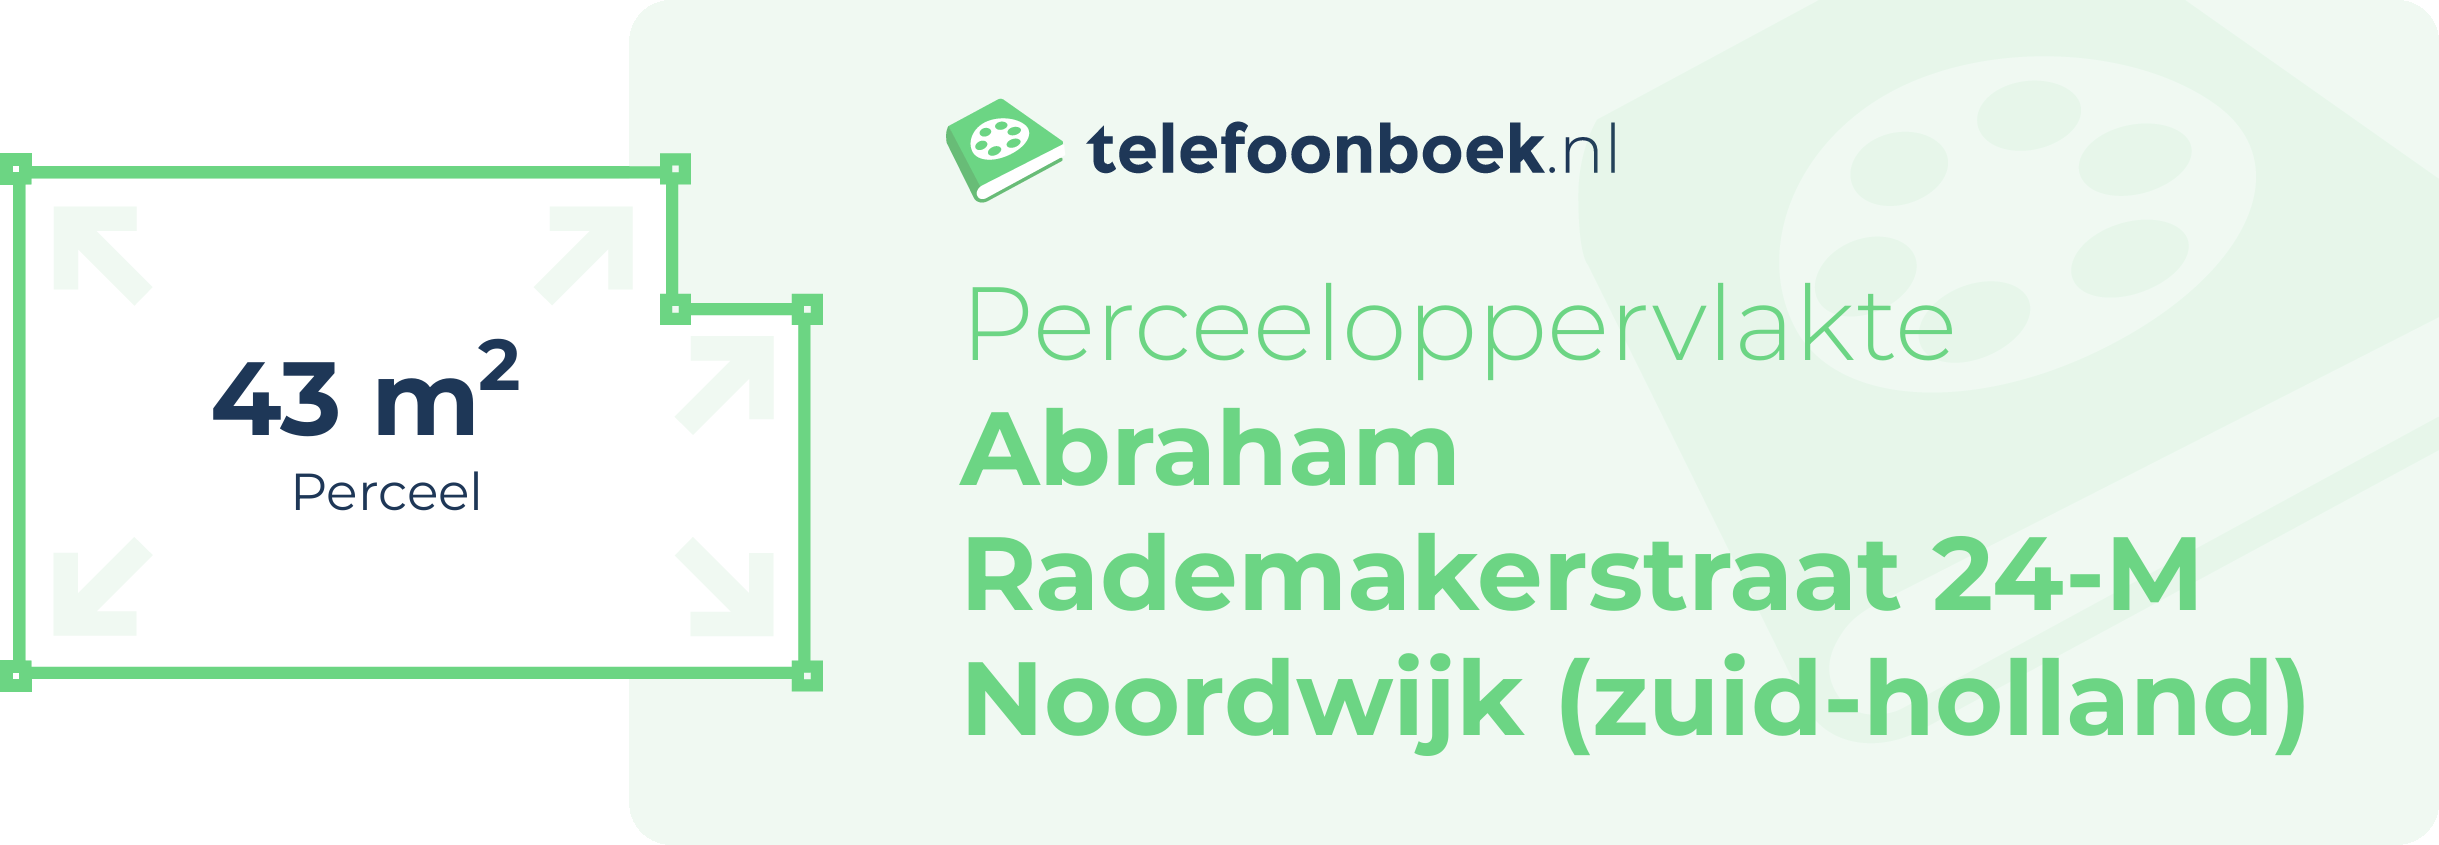 Perceeloppervlakte Abraham Rademakerstraat 24-M Noordwijk (Zuid-Holland)